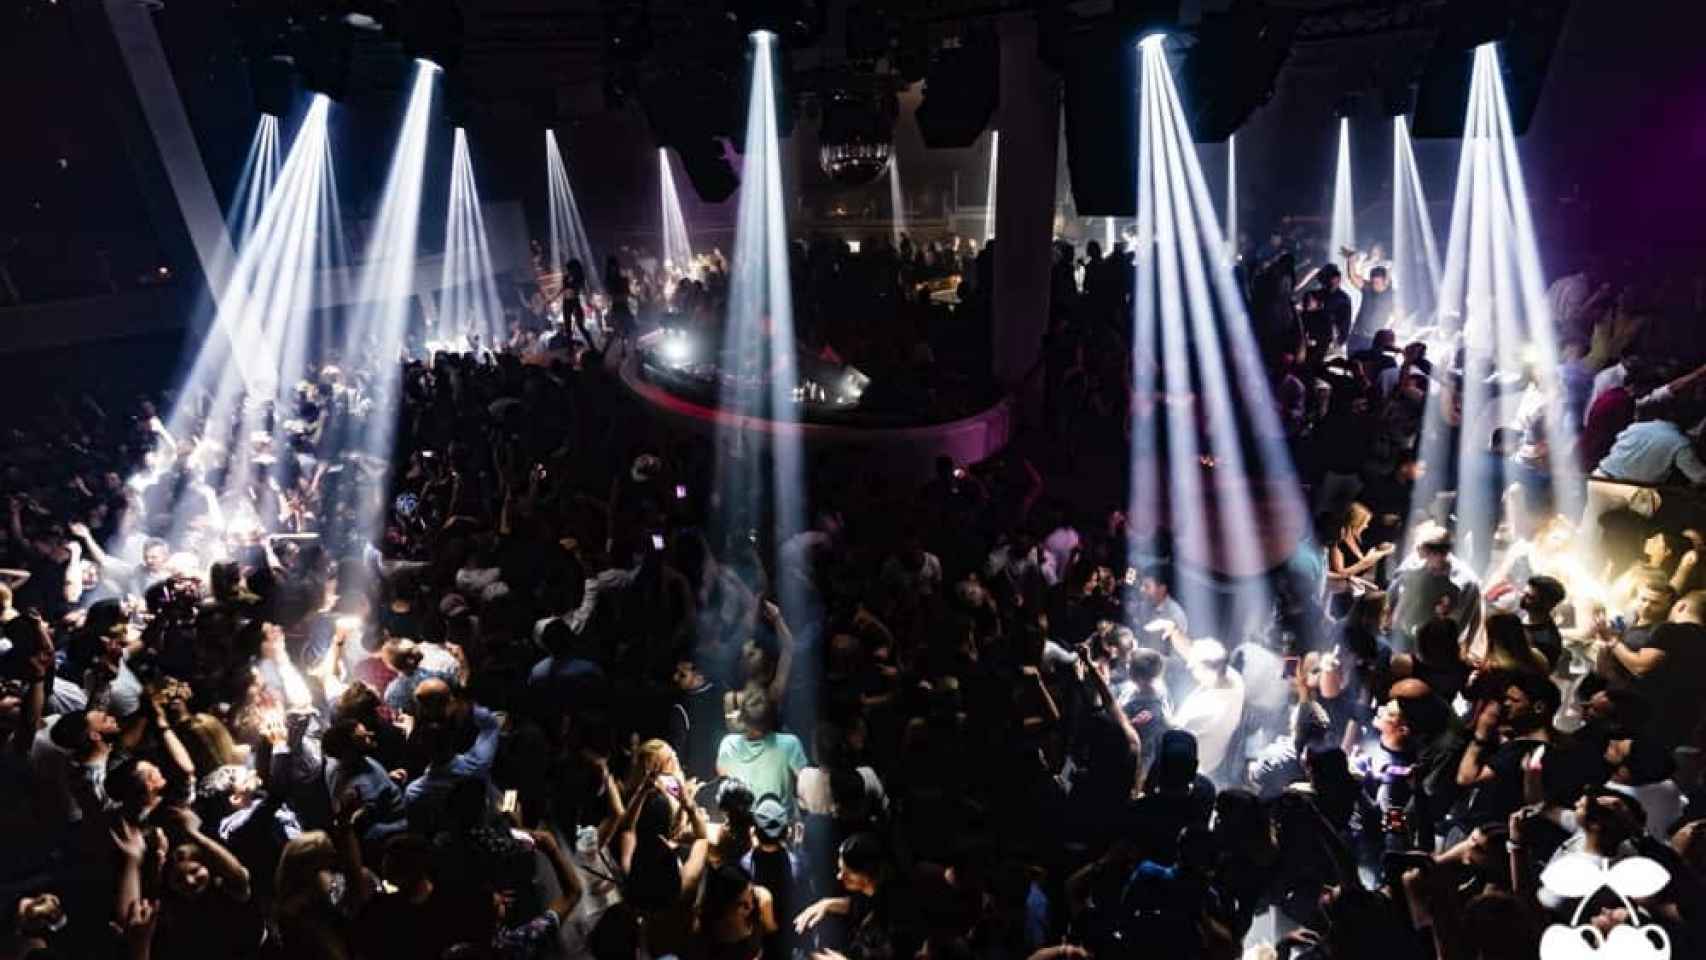 Imagen del interior de la discoteca Pacha una noche de fiesta.